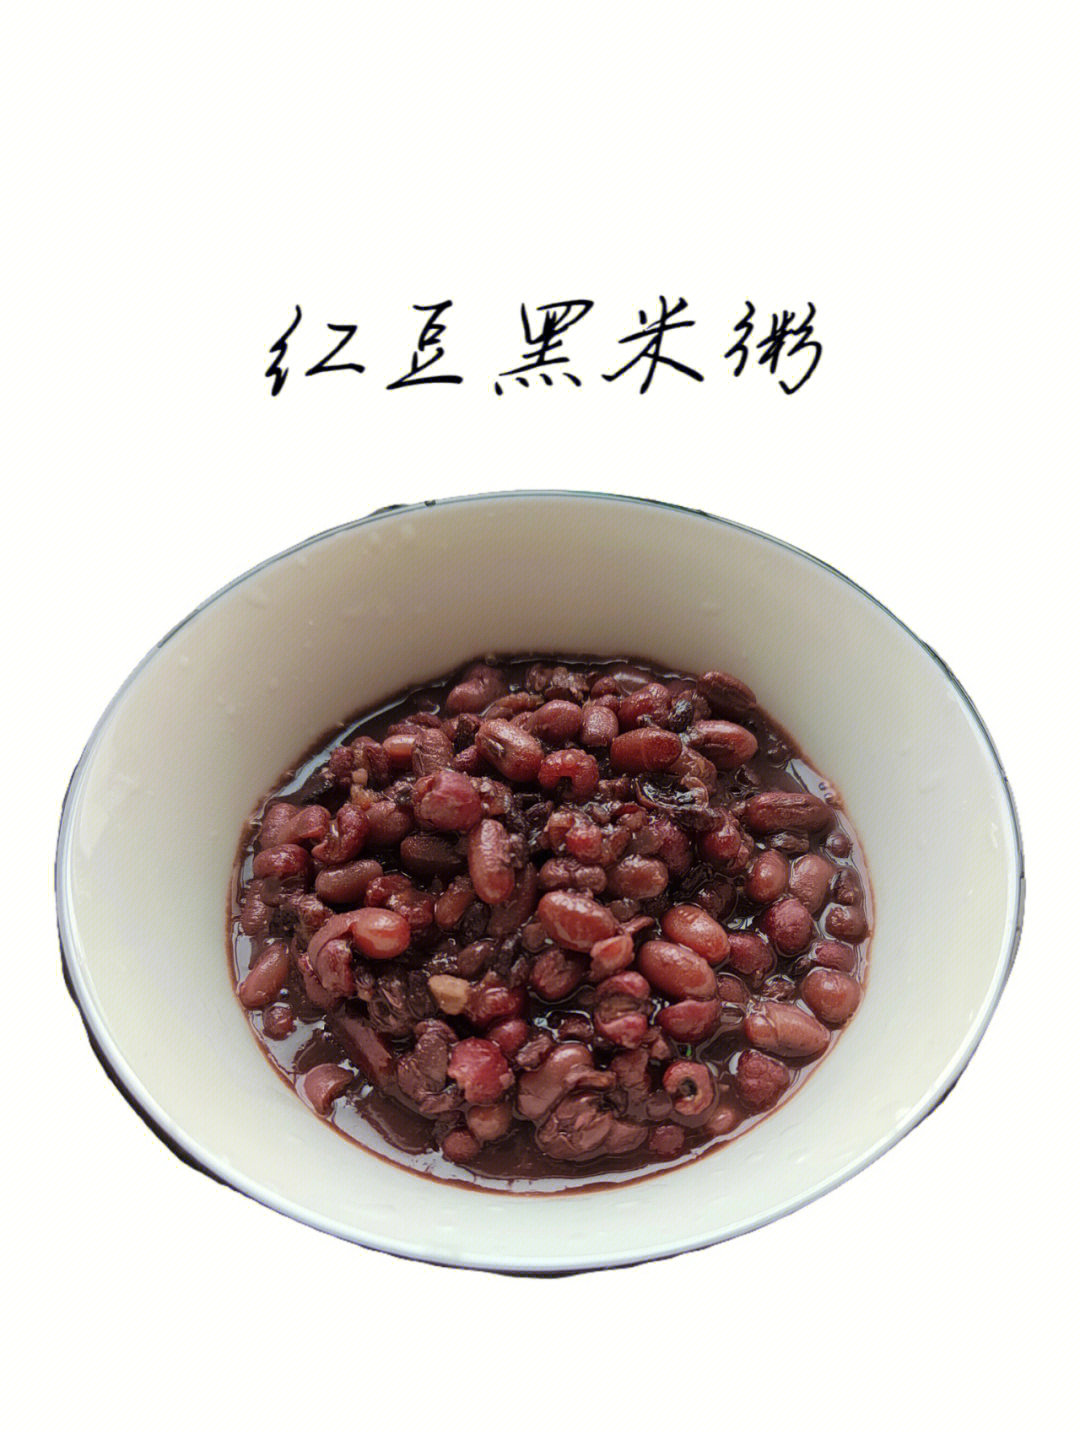 红豆黑米粥做法1红豆,黑米,薏仁米浸泡一晚,这样可以更快煮熟2